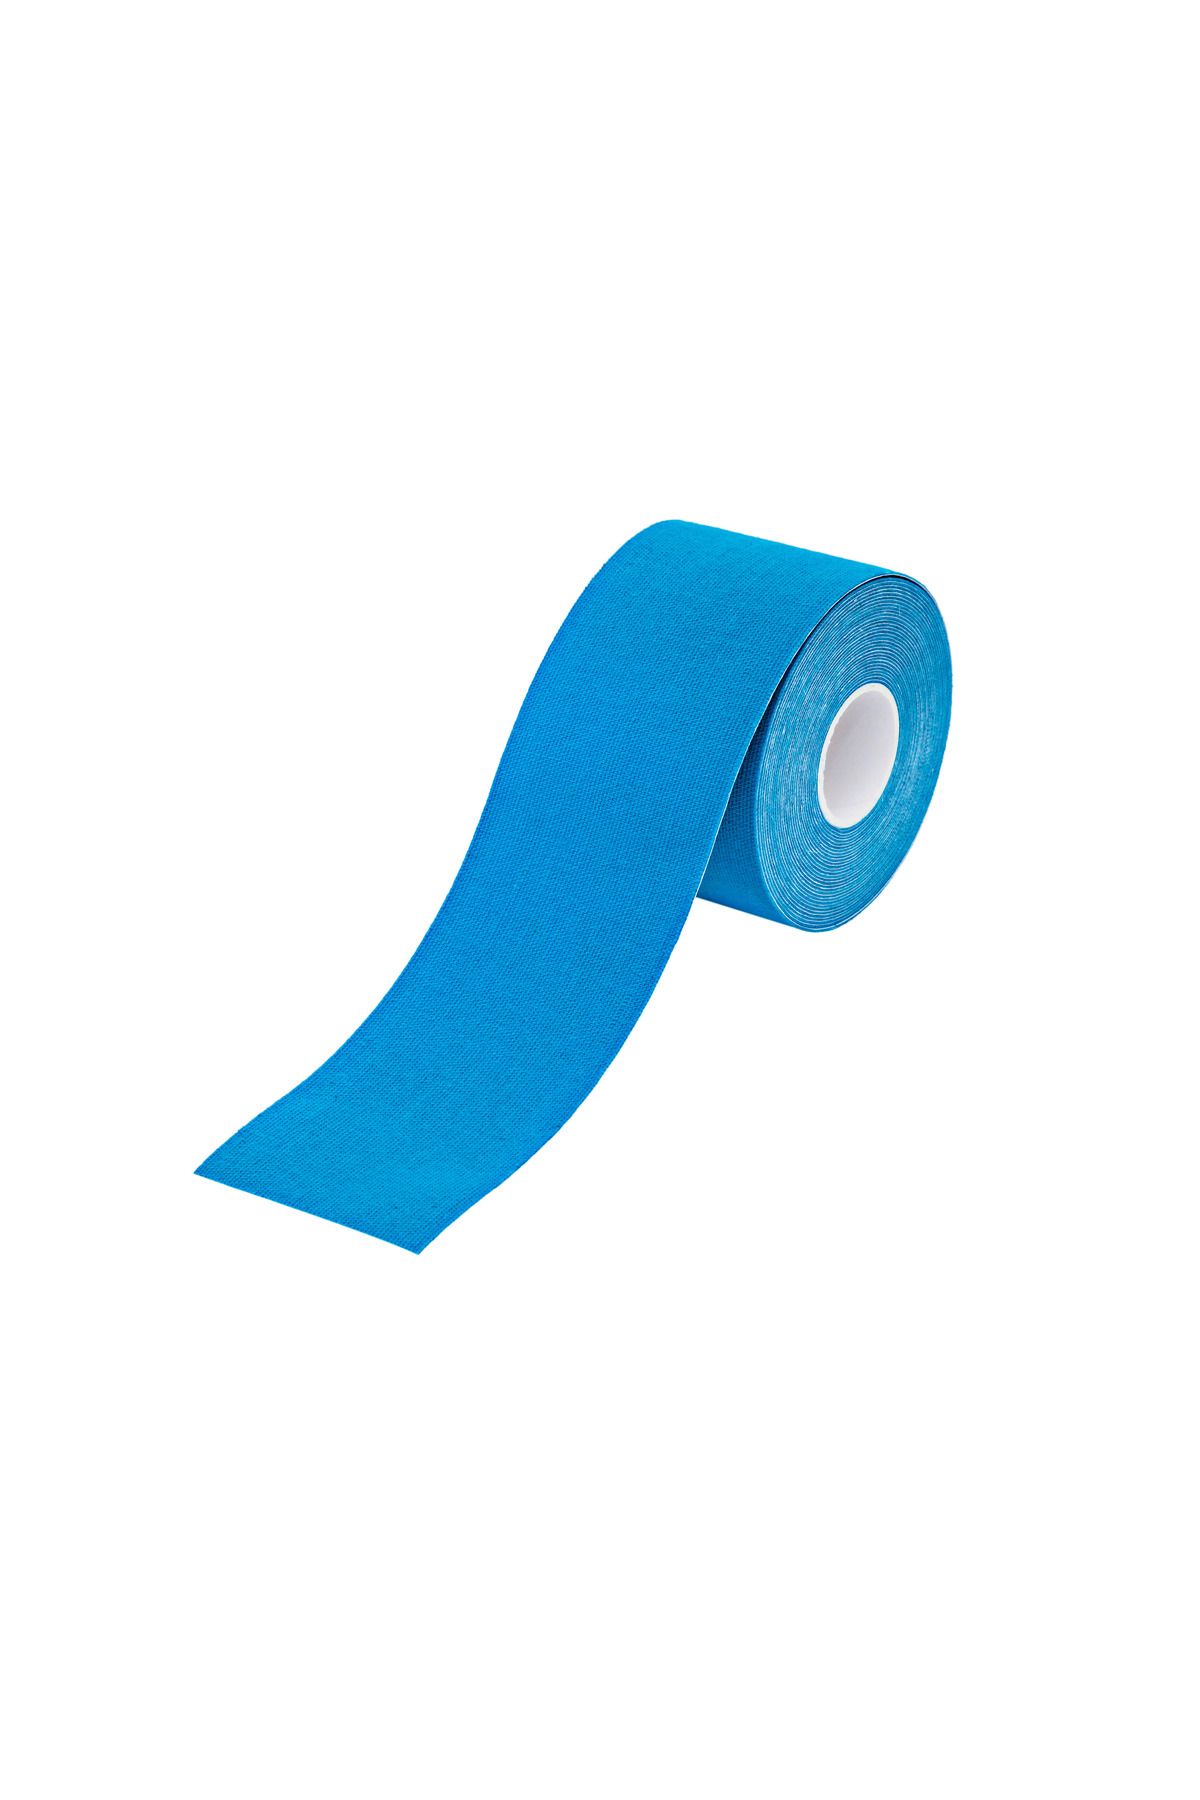 VZN Tape Mavi Renk Sport Tape Ağrı Bandı 5 M X 5 Cm